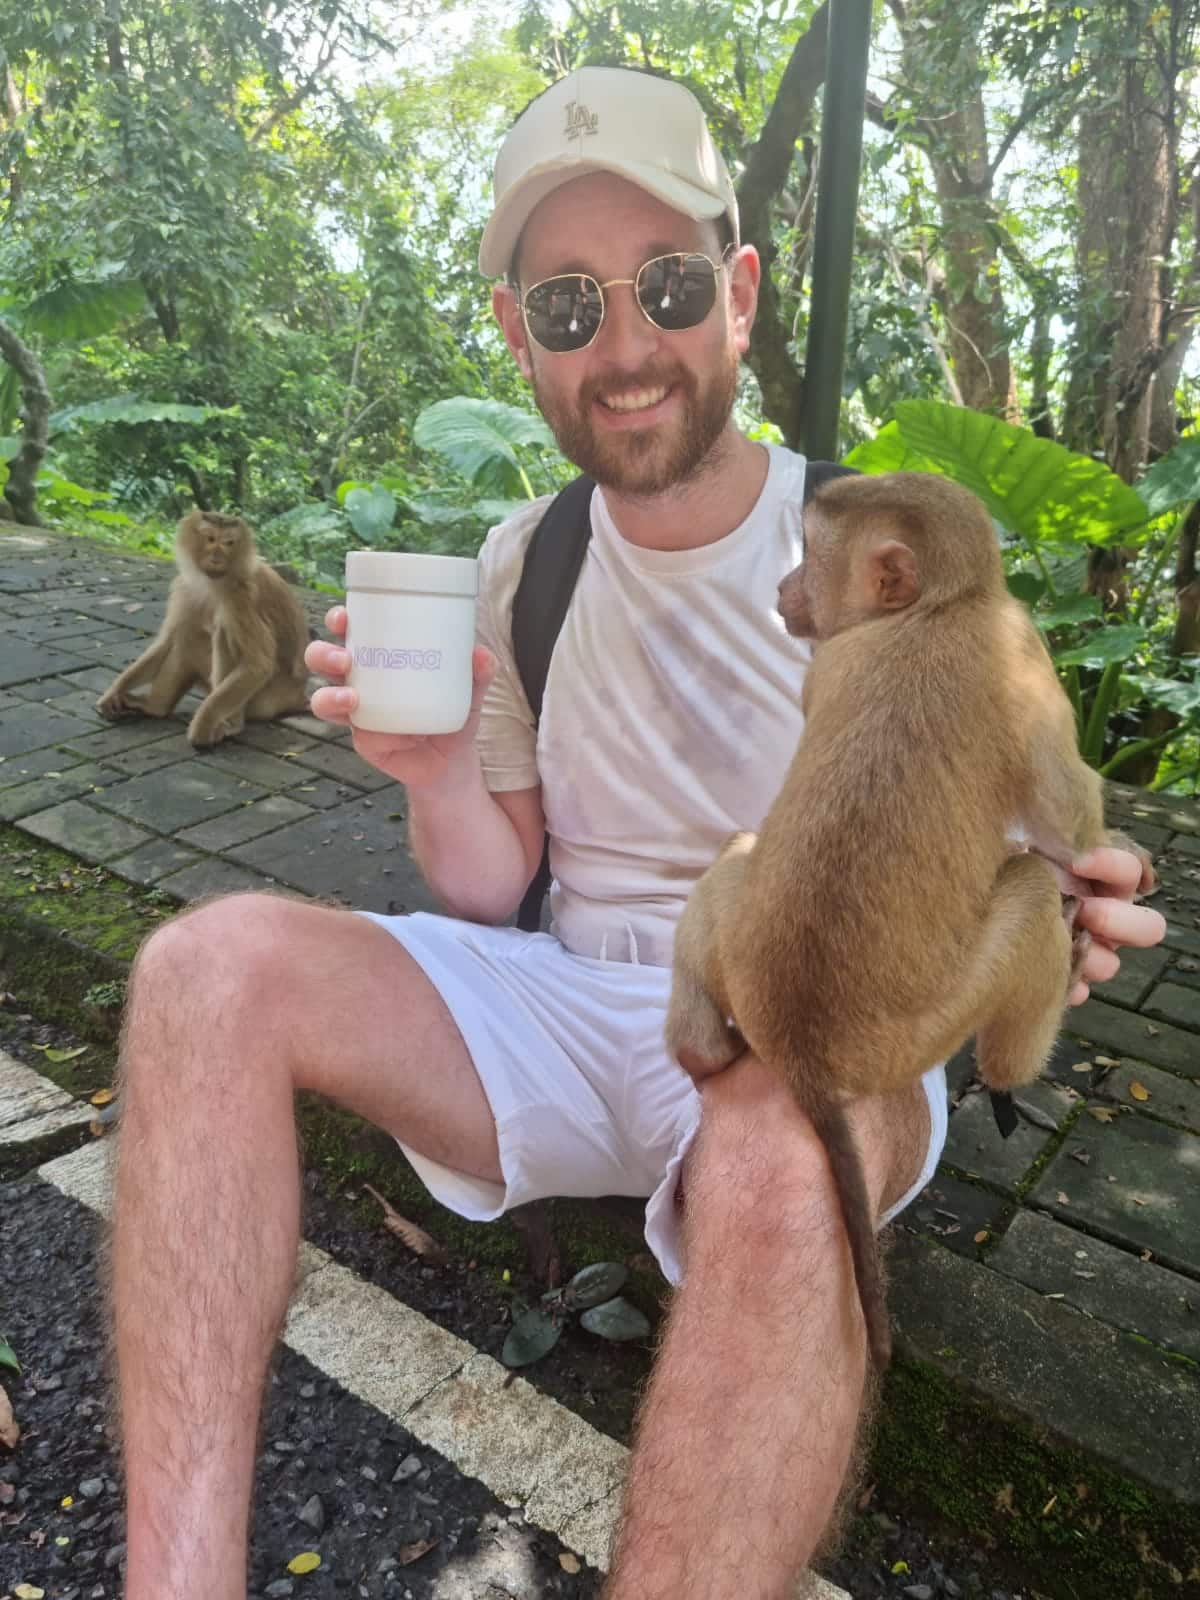 Un uomo sorridente con un cappellino da baseball bianco seduto in un ambiente tropicale, che tiene una bibita nella mano destra e tocca con la mano sinistra una scimmia marrone che sta in equilibrio sul ginocchio sinistro.